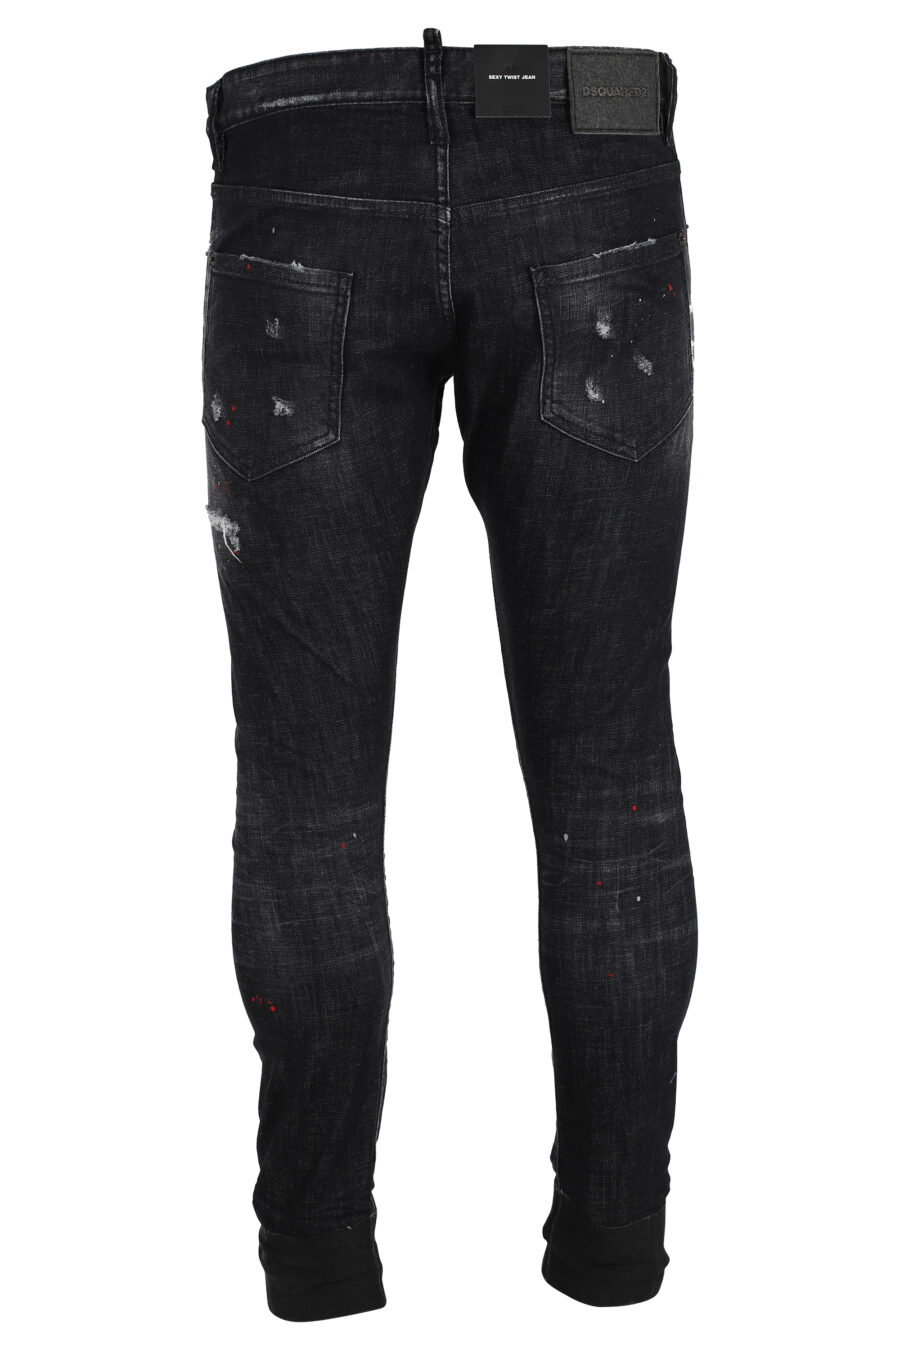 Pantalón vaquero "sexy twist jean" negro desgastado - IMG 4857